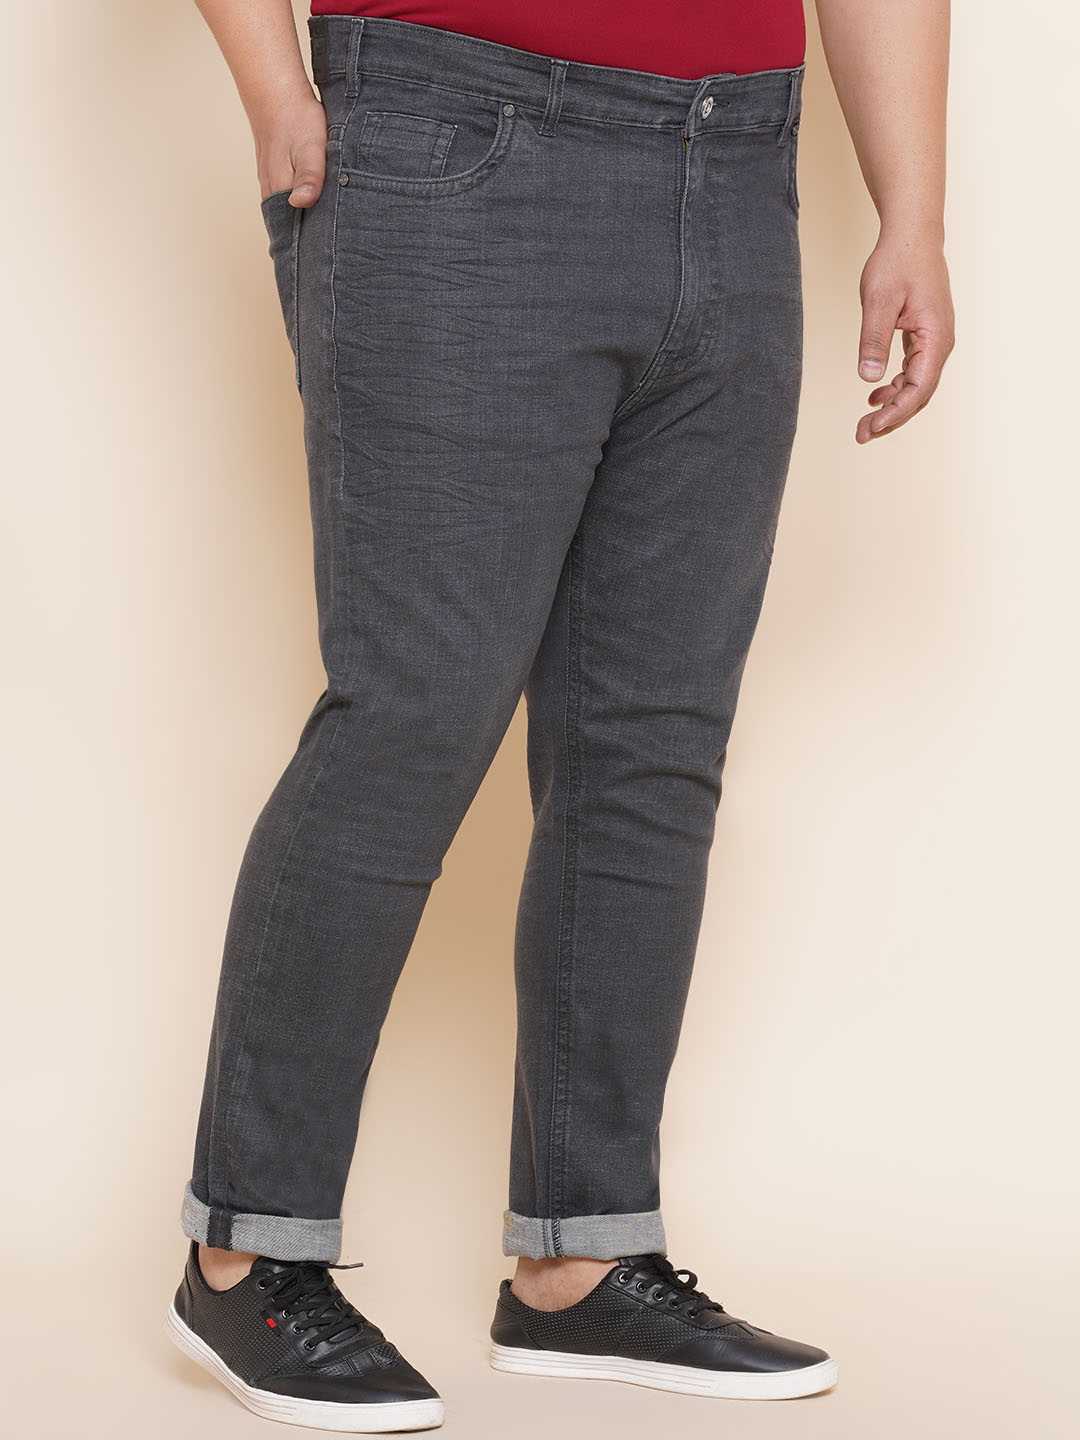 bottomwear/jeans/JPJ12294/jpj12294-3.jpg